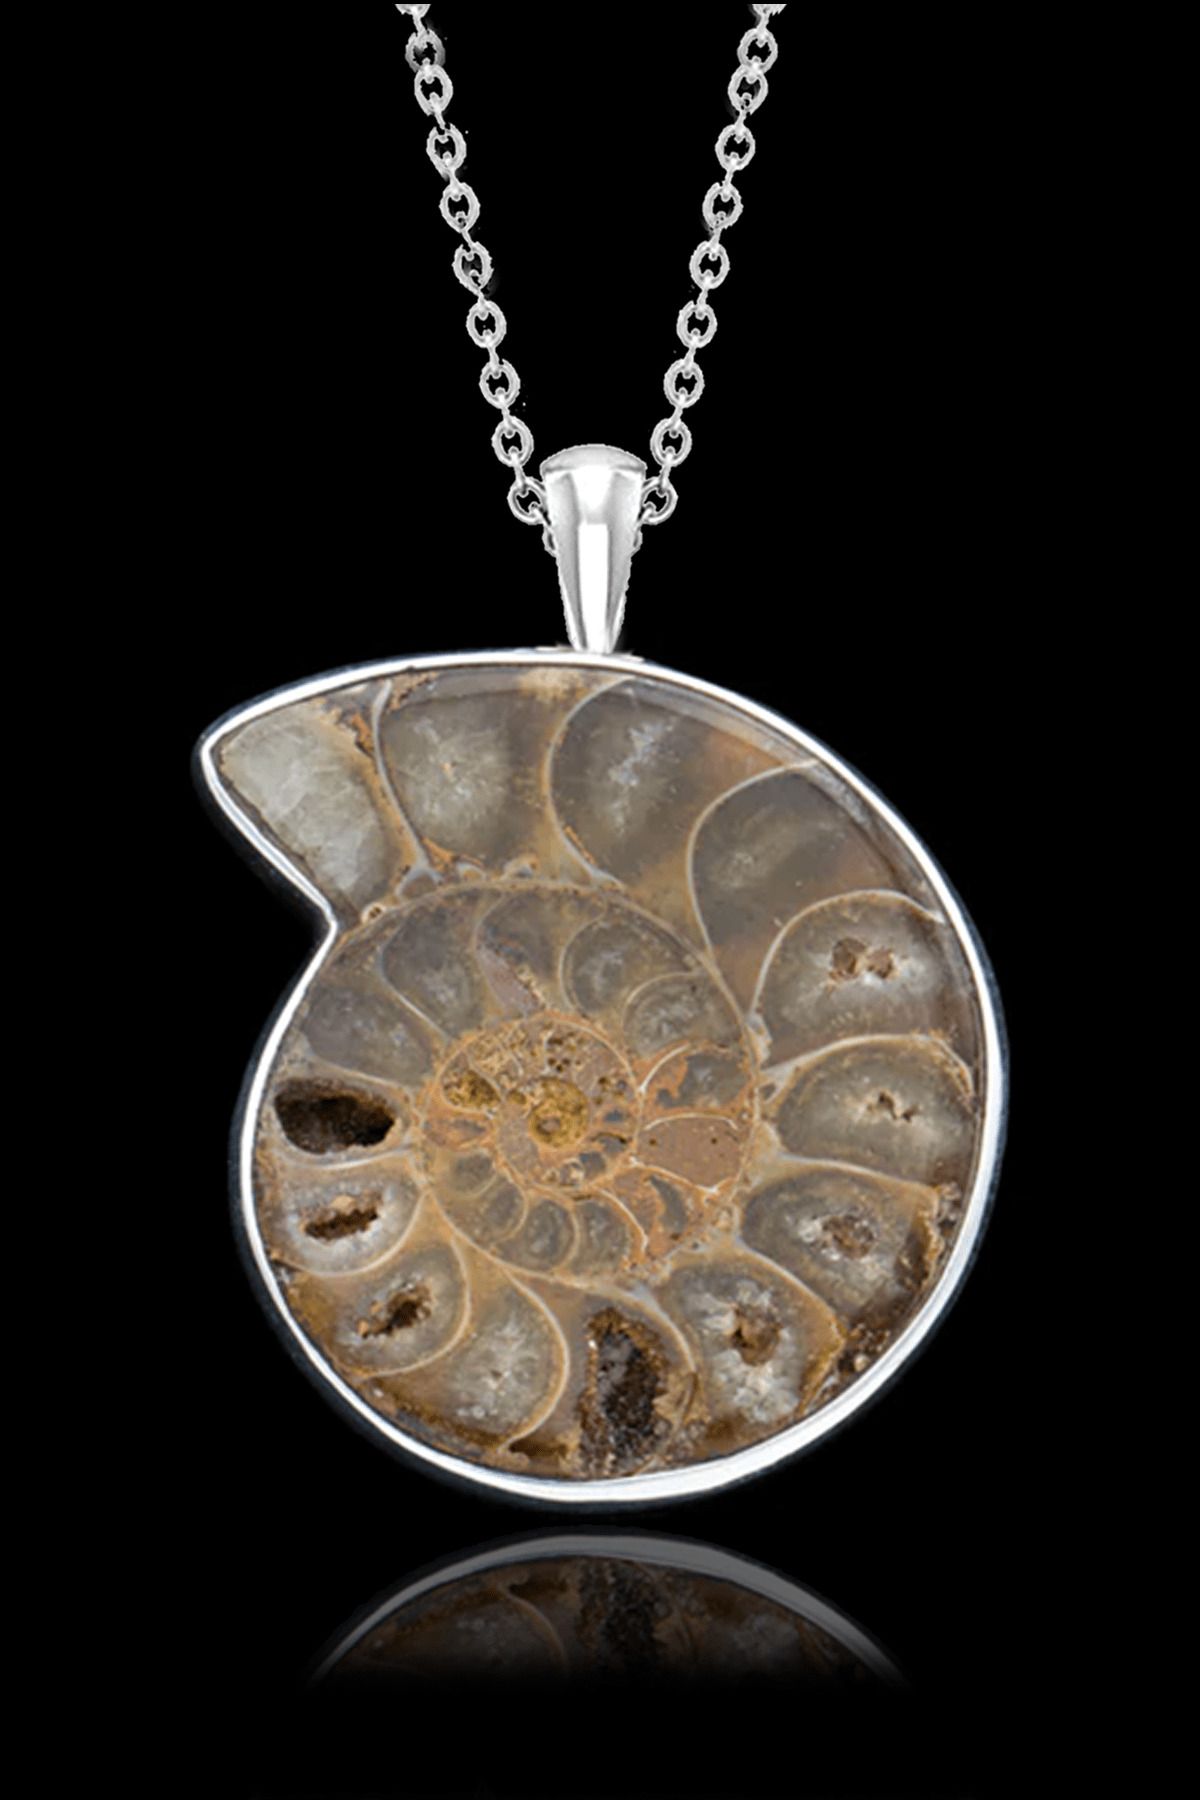 Tesbih Atölyesi Sertifikalı Ammonit Fosil Doğal Taş Kolye - Aaa+ Kalite